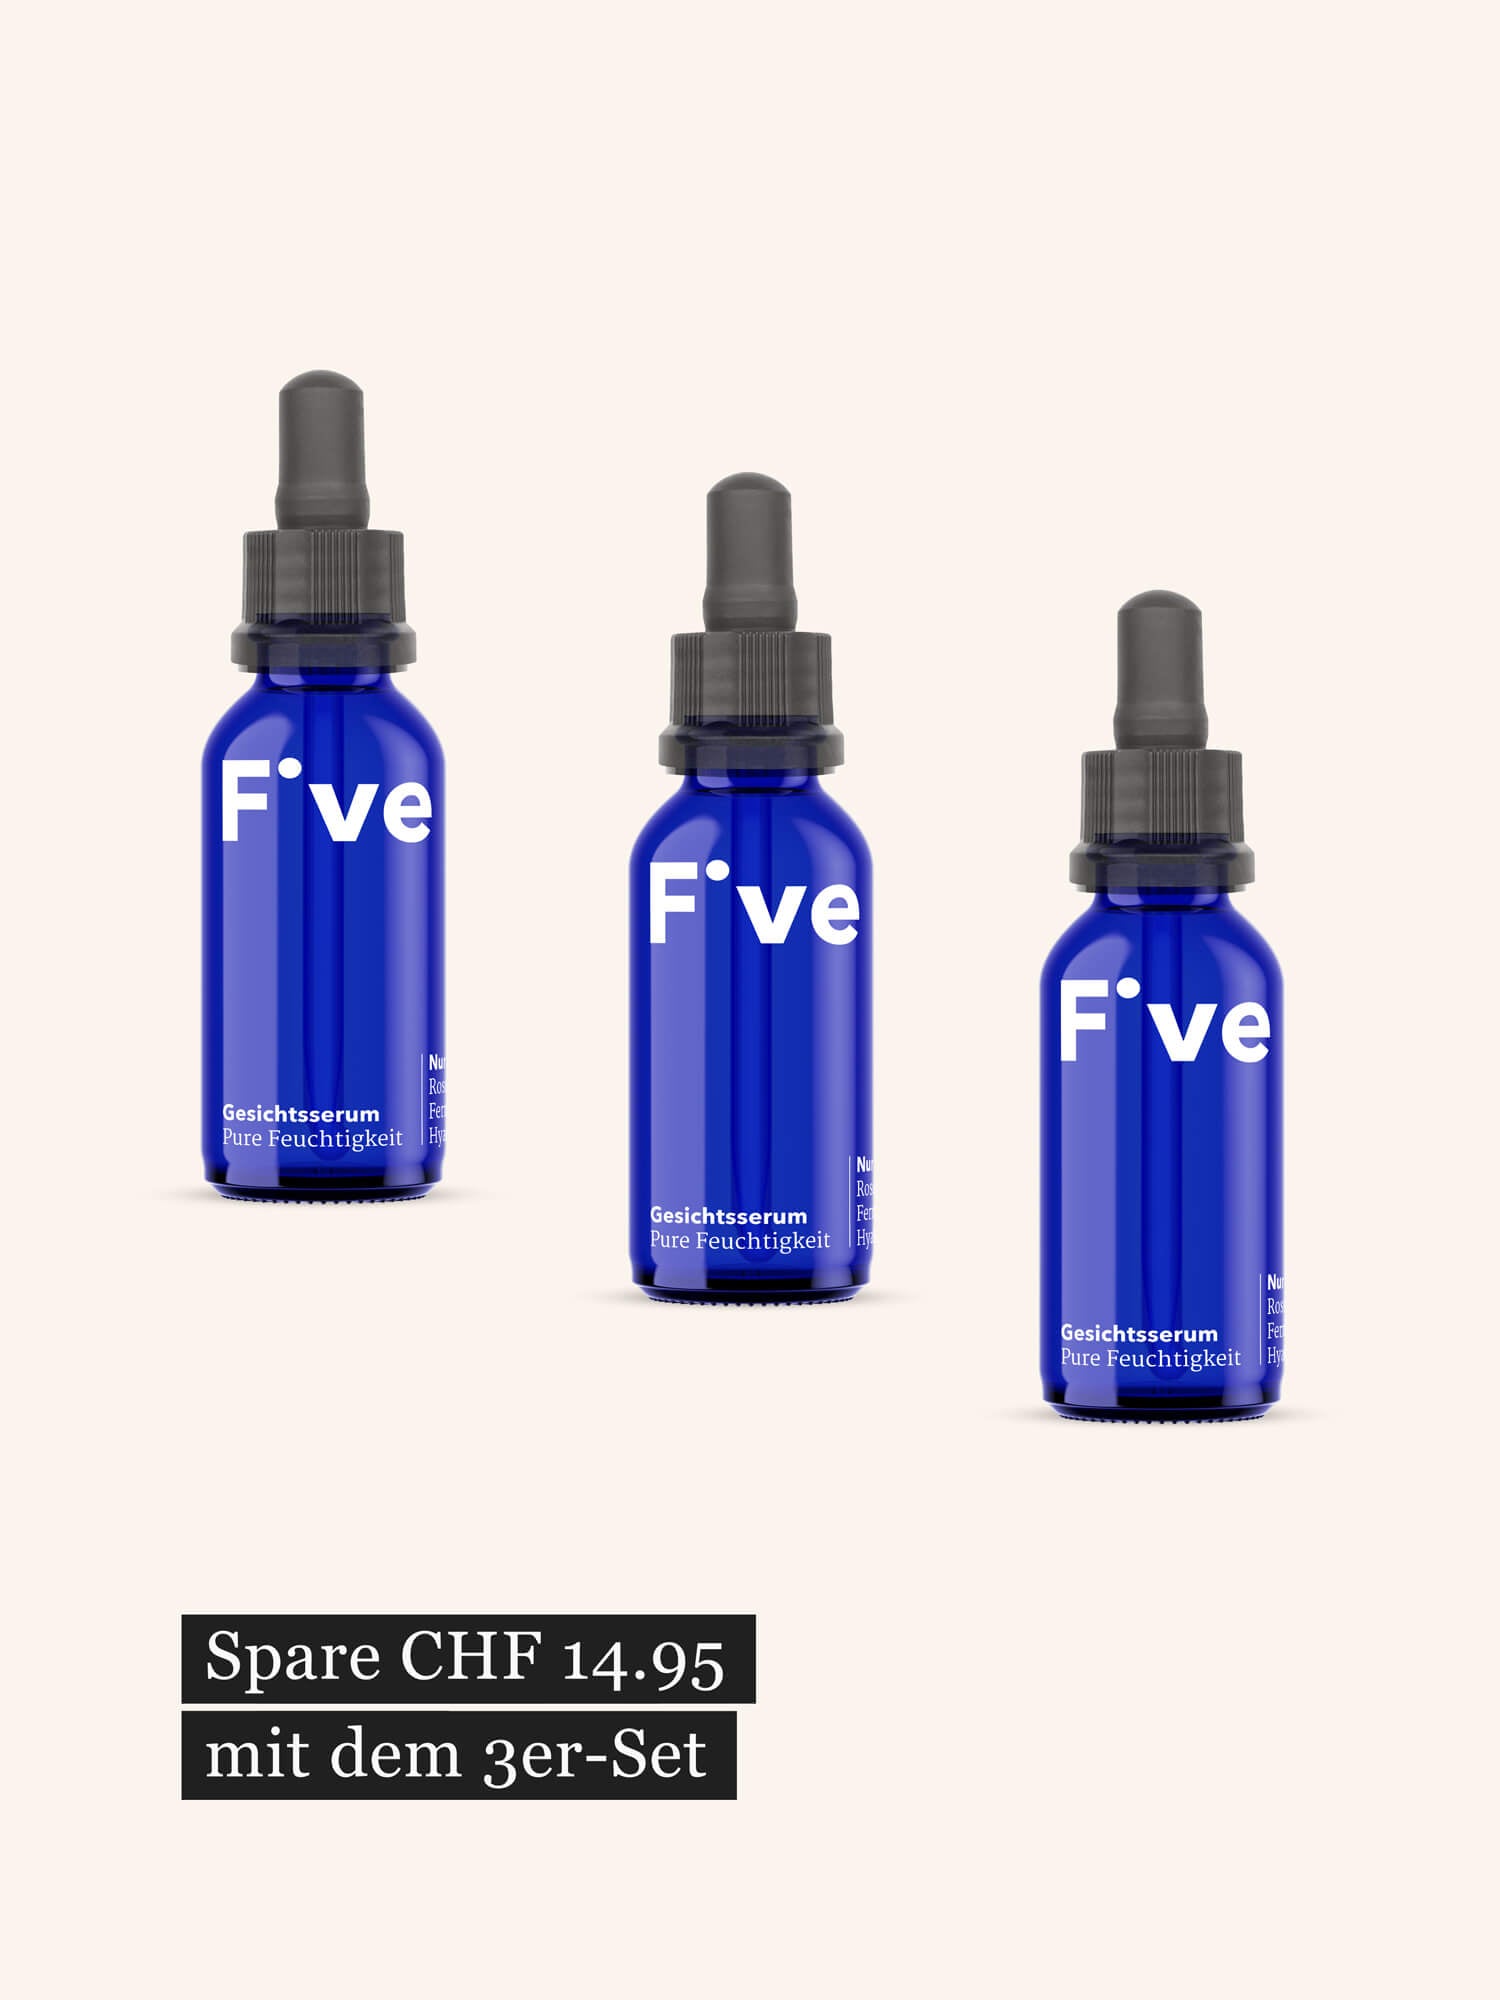 3 × Five Gesichtsserum – Pure Feuchtigkeit für deine Haut | Five Skincare